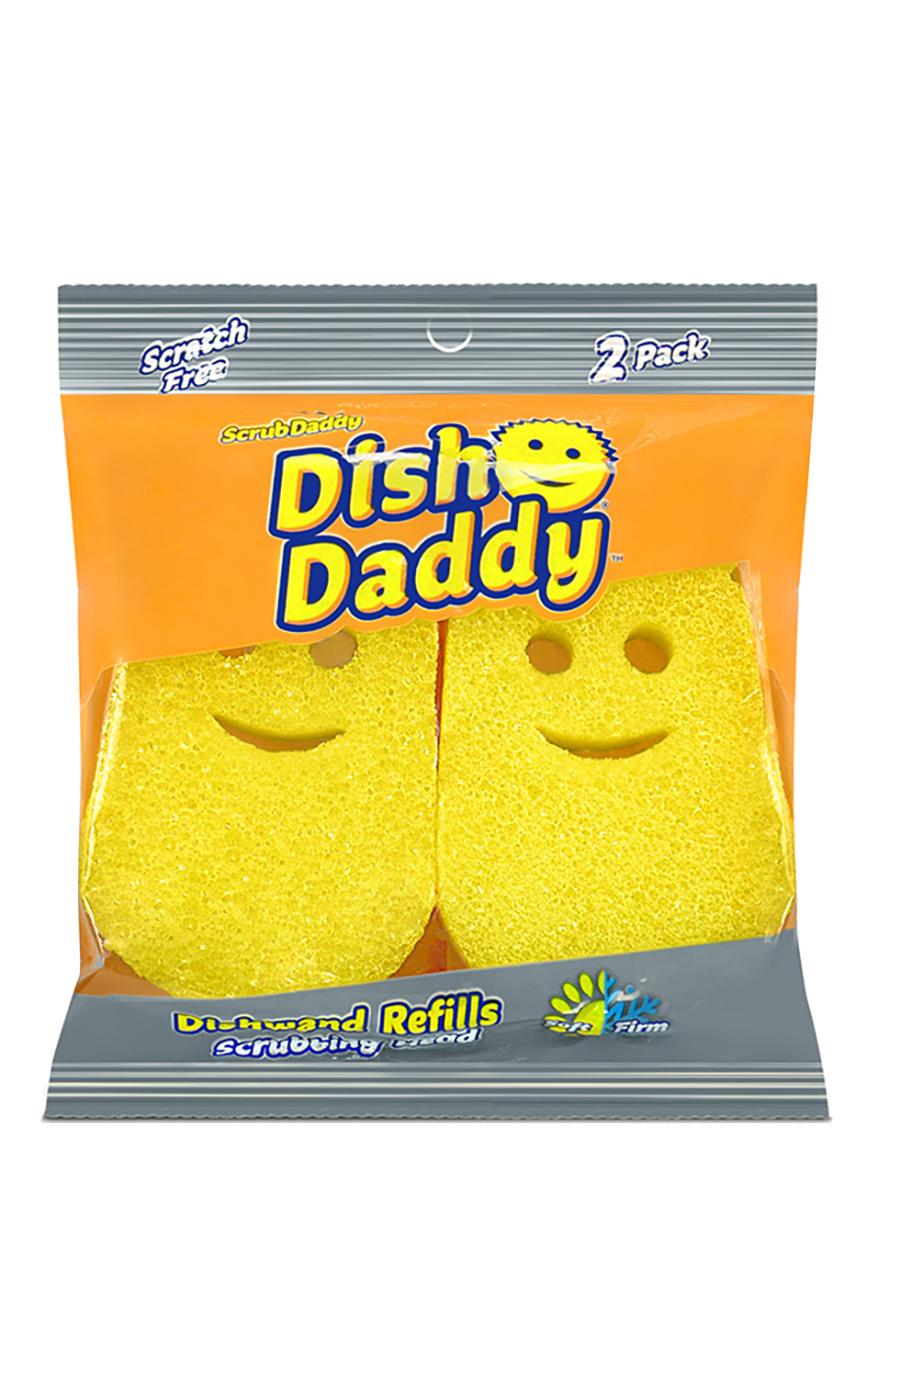 Scrub Daddy Dish Daddy Dishwand Refills - Shop Sponges & Scrubbers